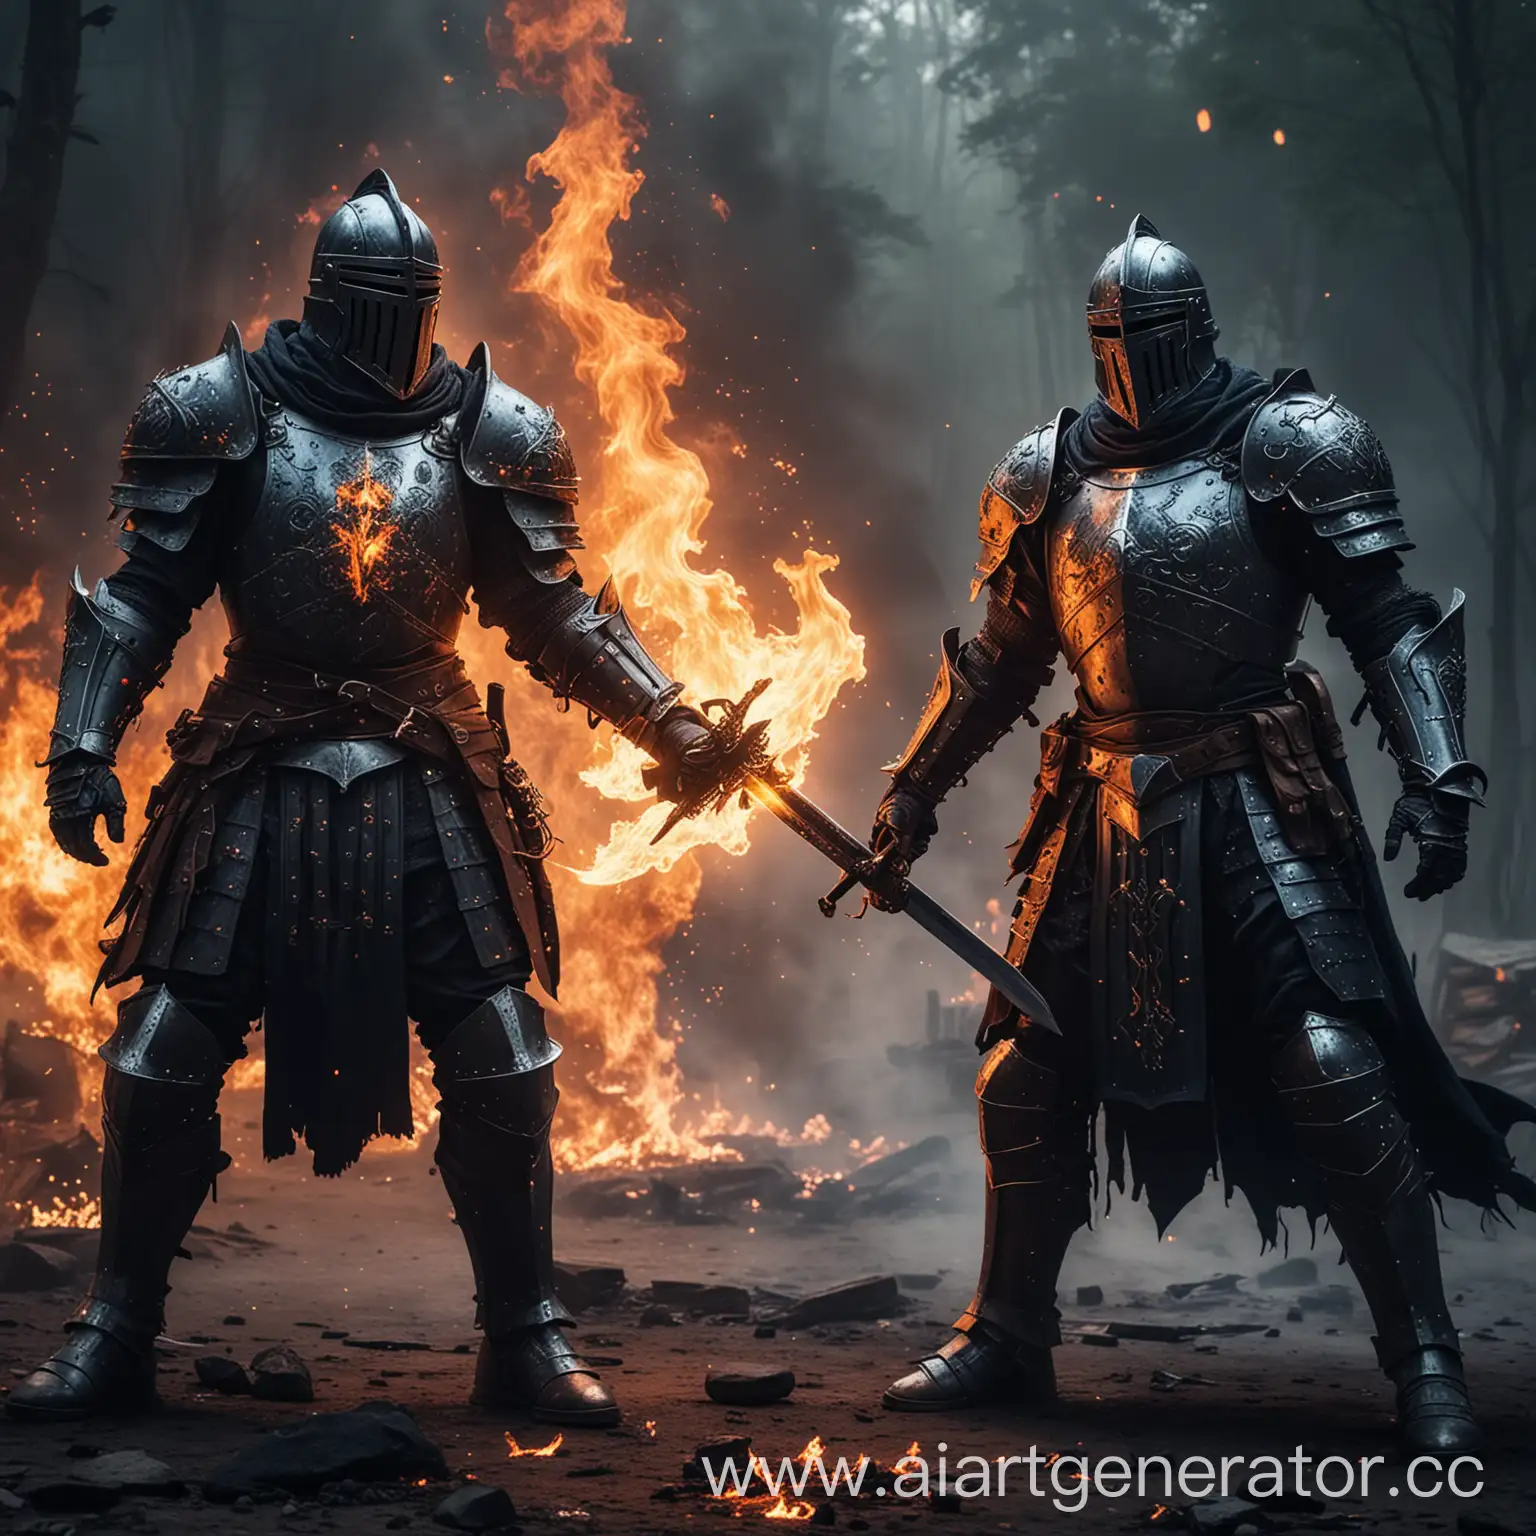 два рыцаря в пылающих доспехах с оружием меч из темного сапфира и пистолетом покрытым магией огня